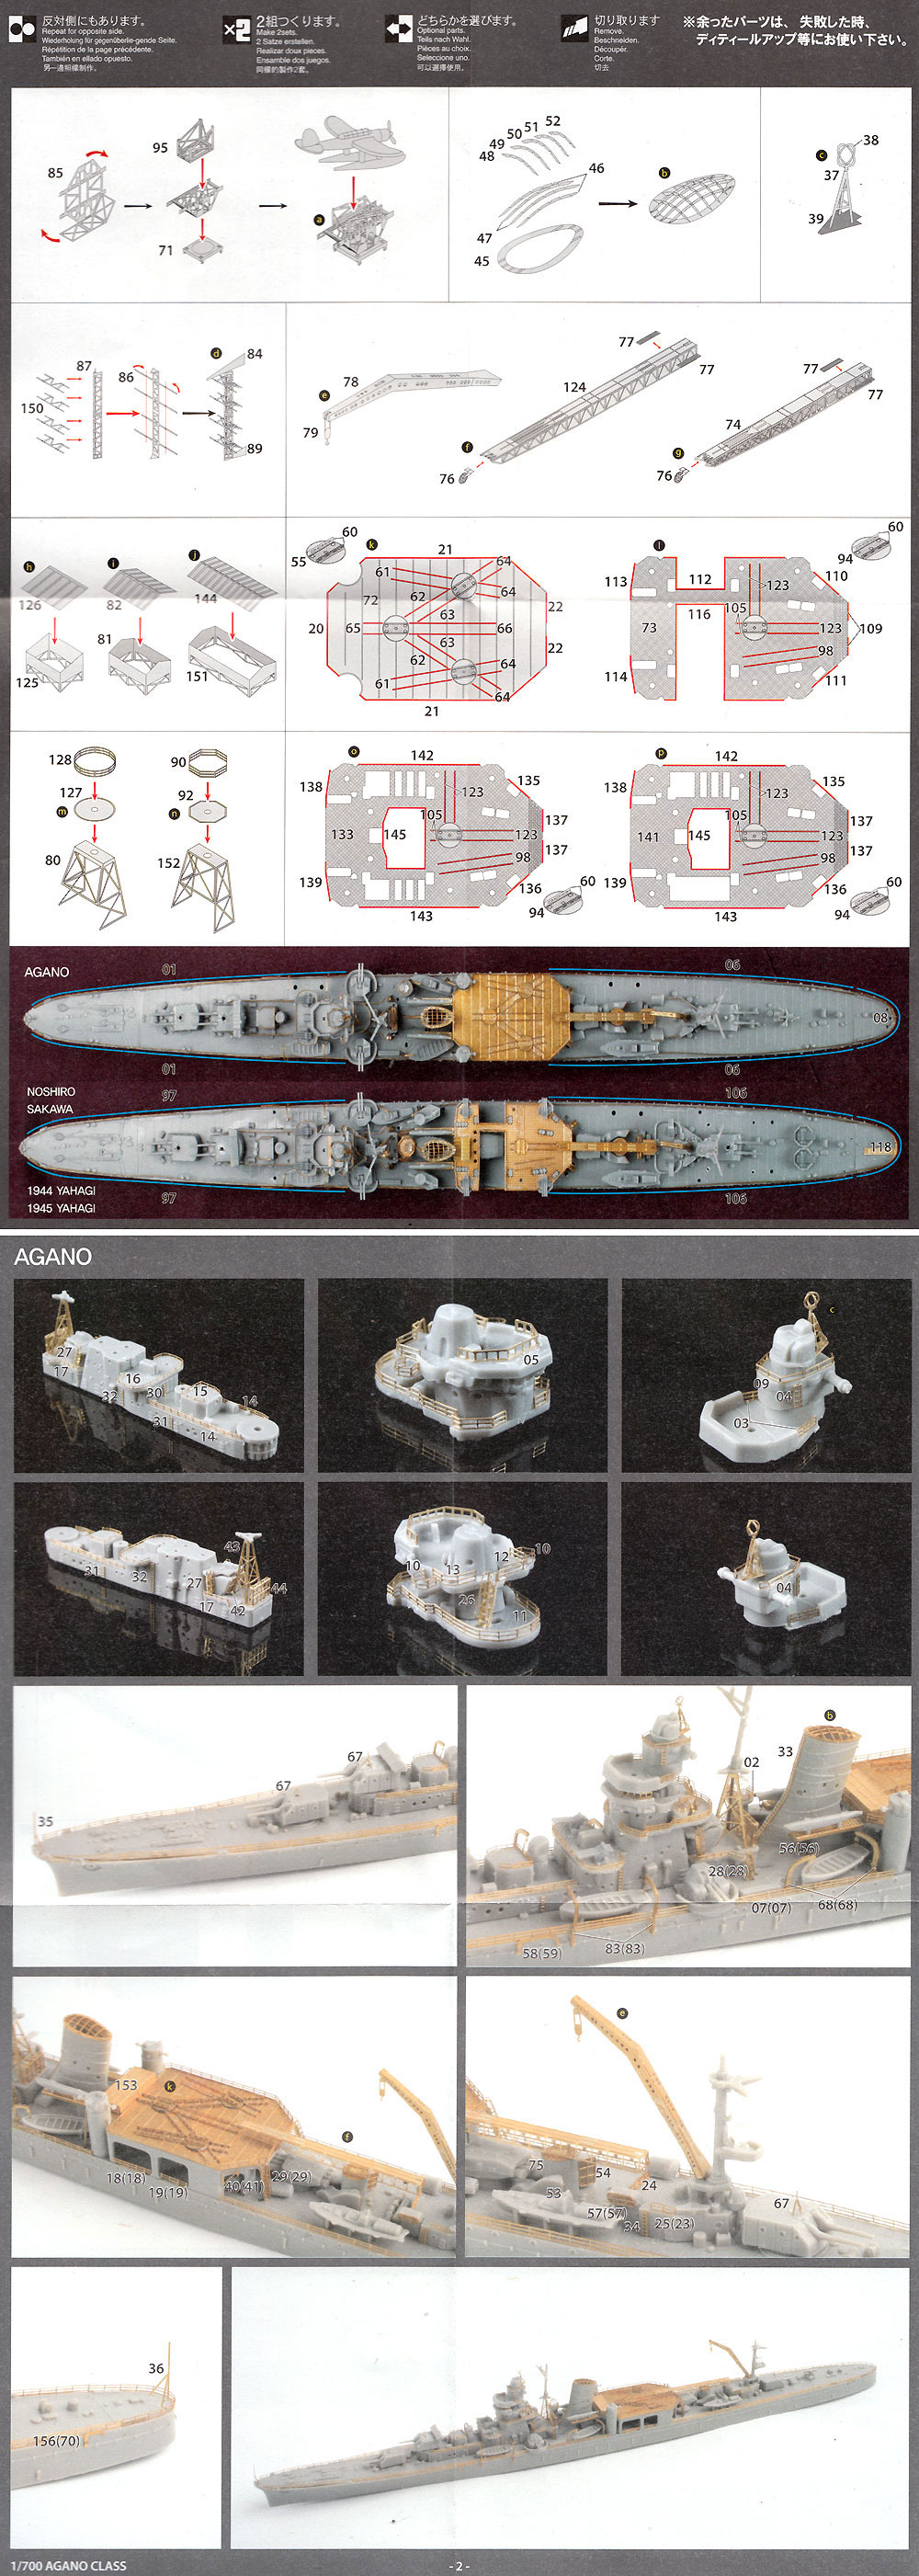 日本海軍 軽巡洋艦 阿賀野型 エッチングパーツ & 2ピース 25ミリ機銃 エッチング (フジミ 1/700 艦船模型用グレードアップパーツ No.特091EX-002) 商品画像_2